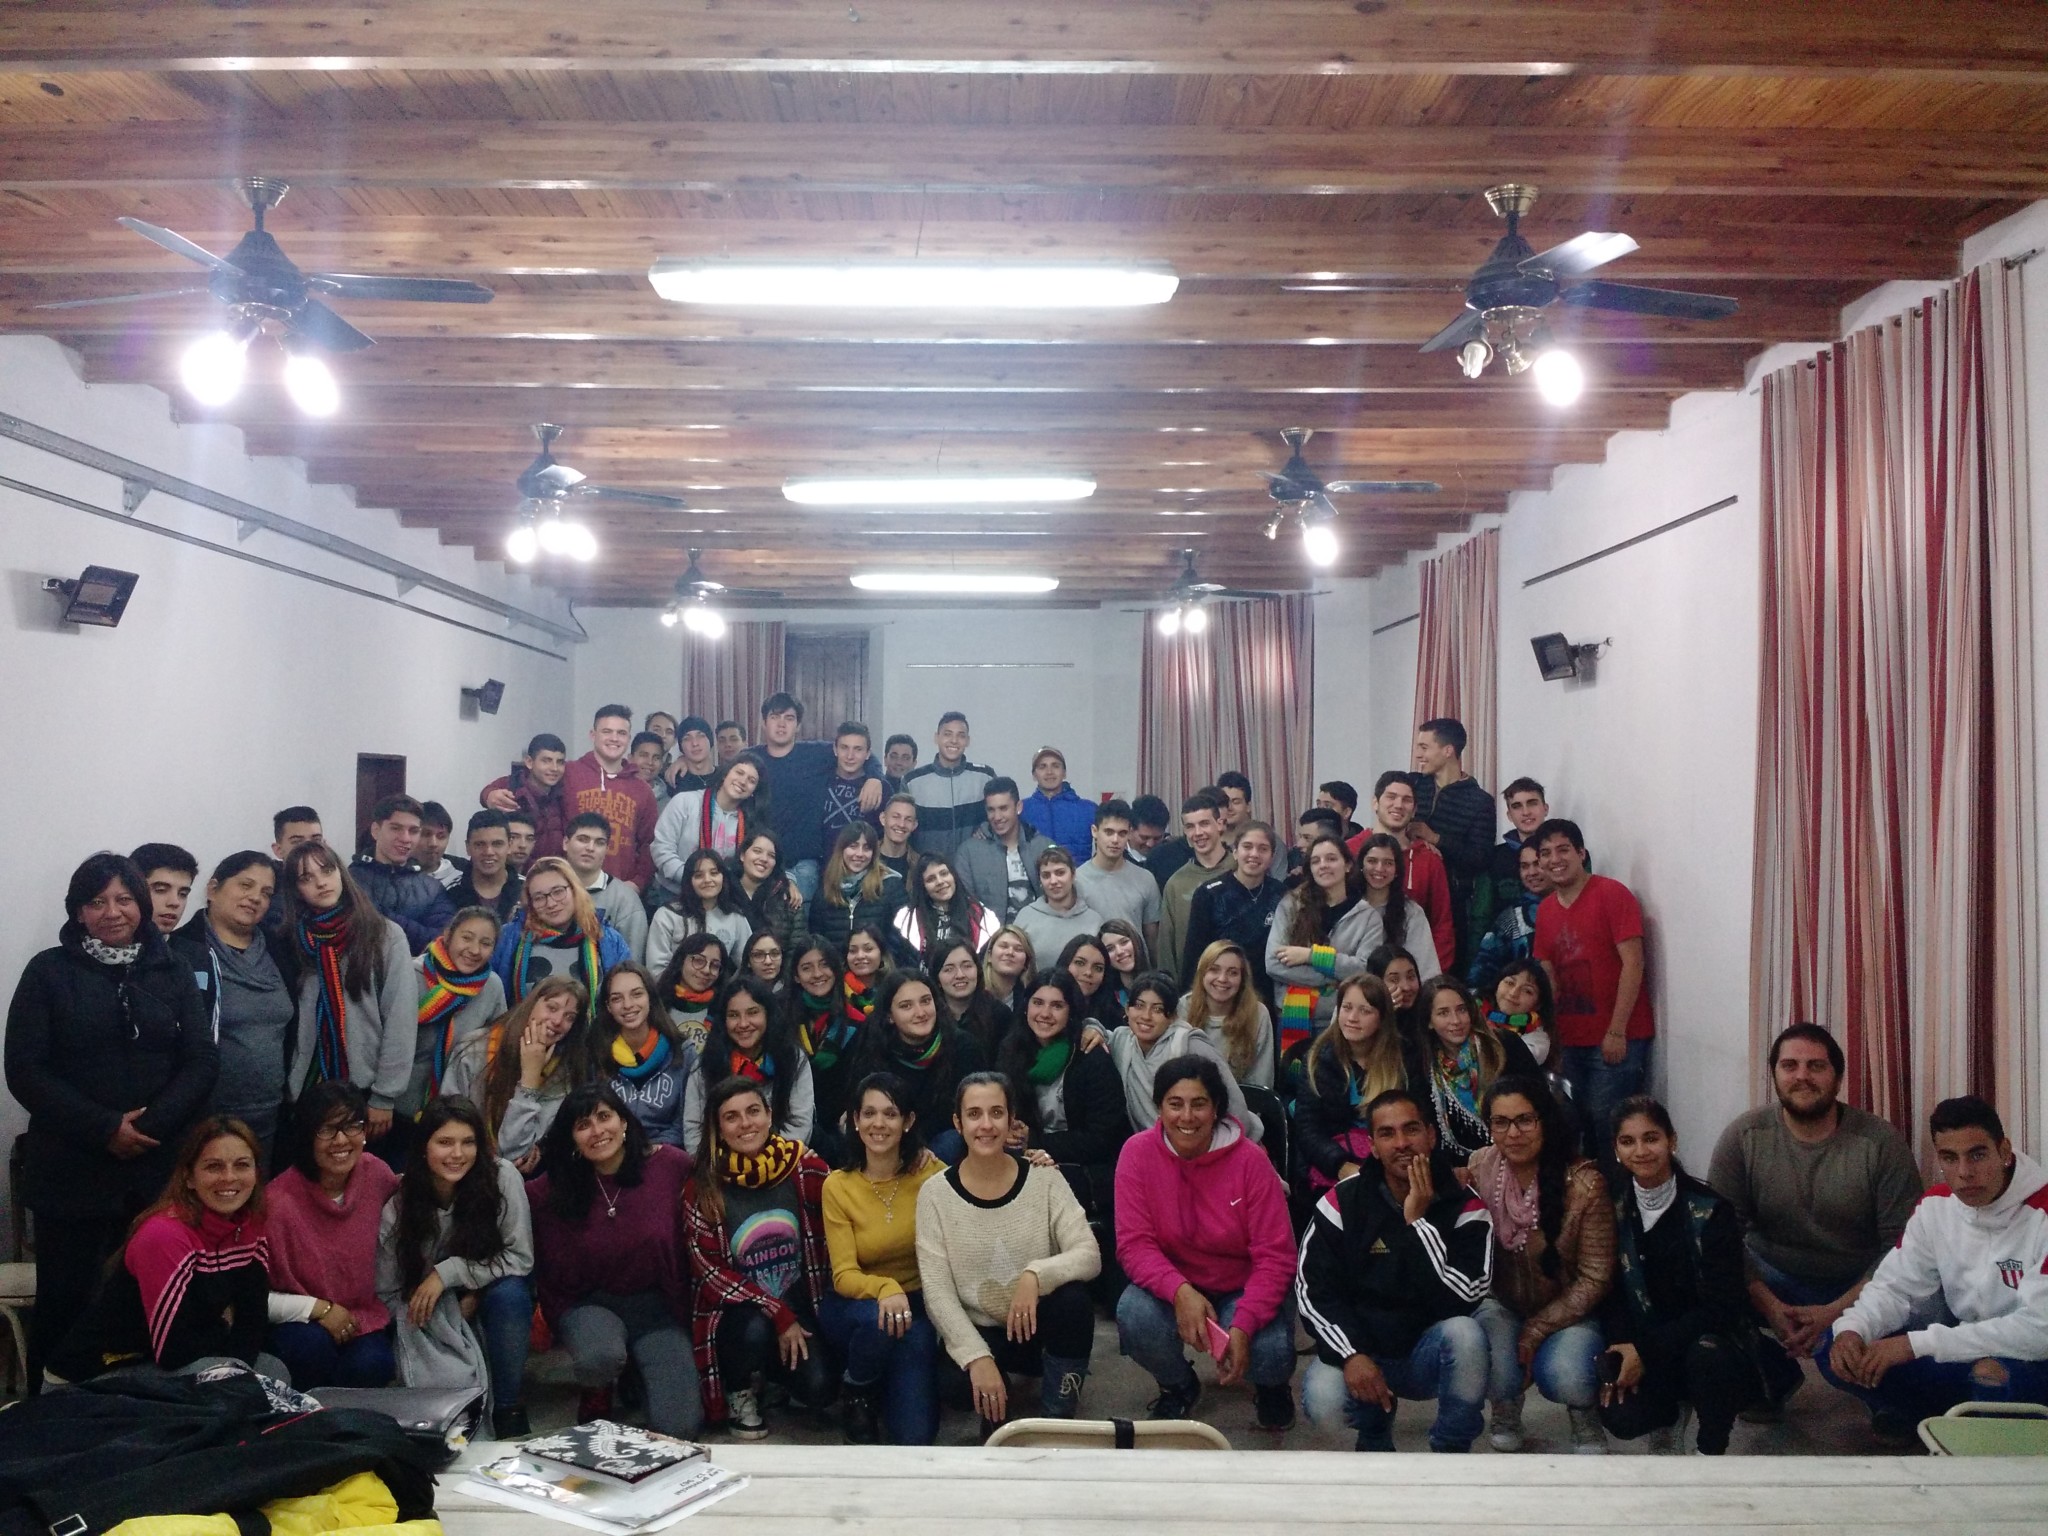 Jornadas de la Juventud: “Normal” y San Pablo / San Martín concluyeron con las intervenciones comunitarias